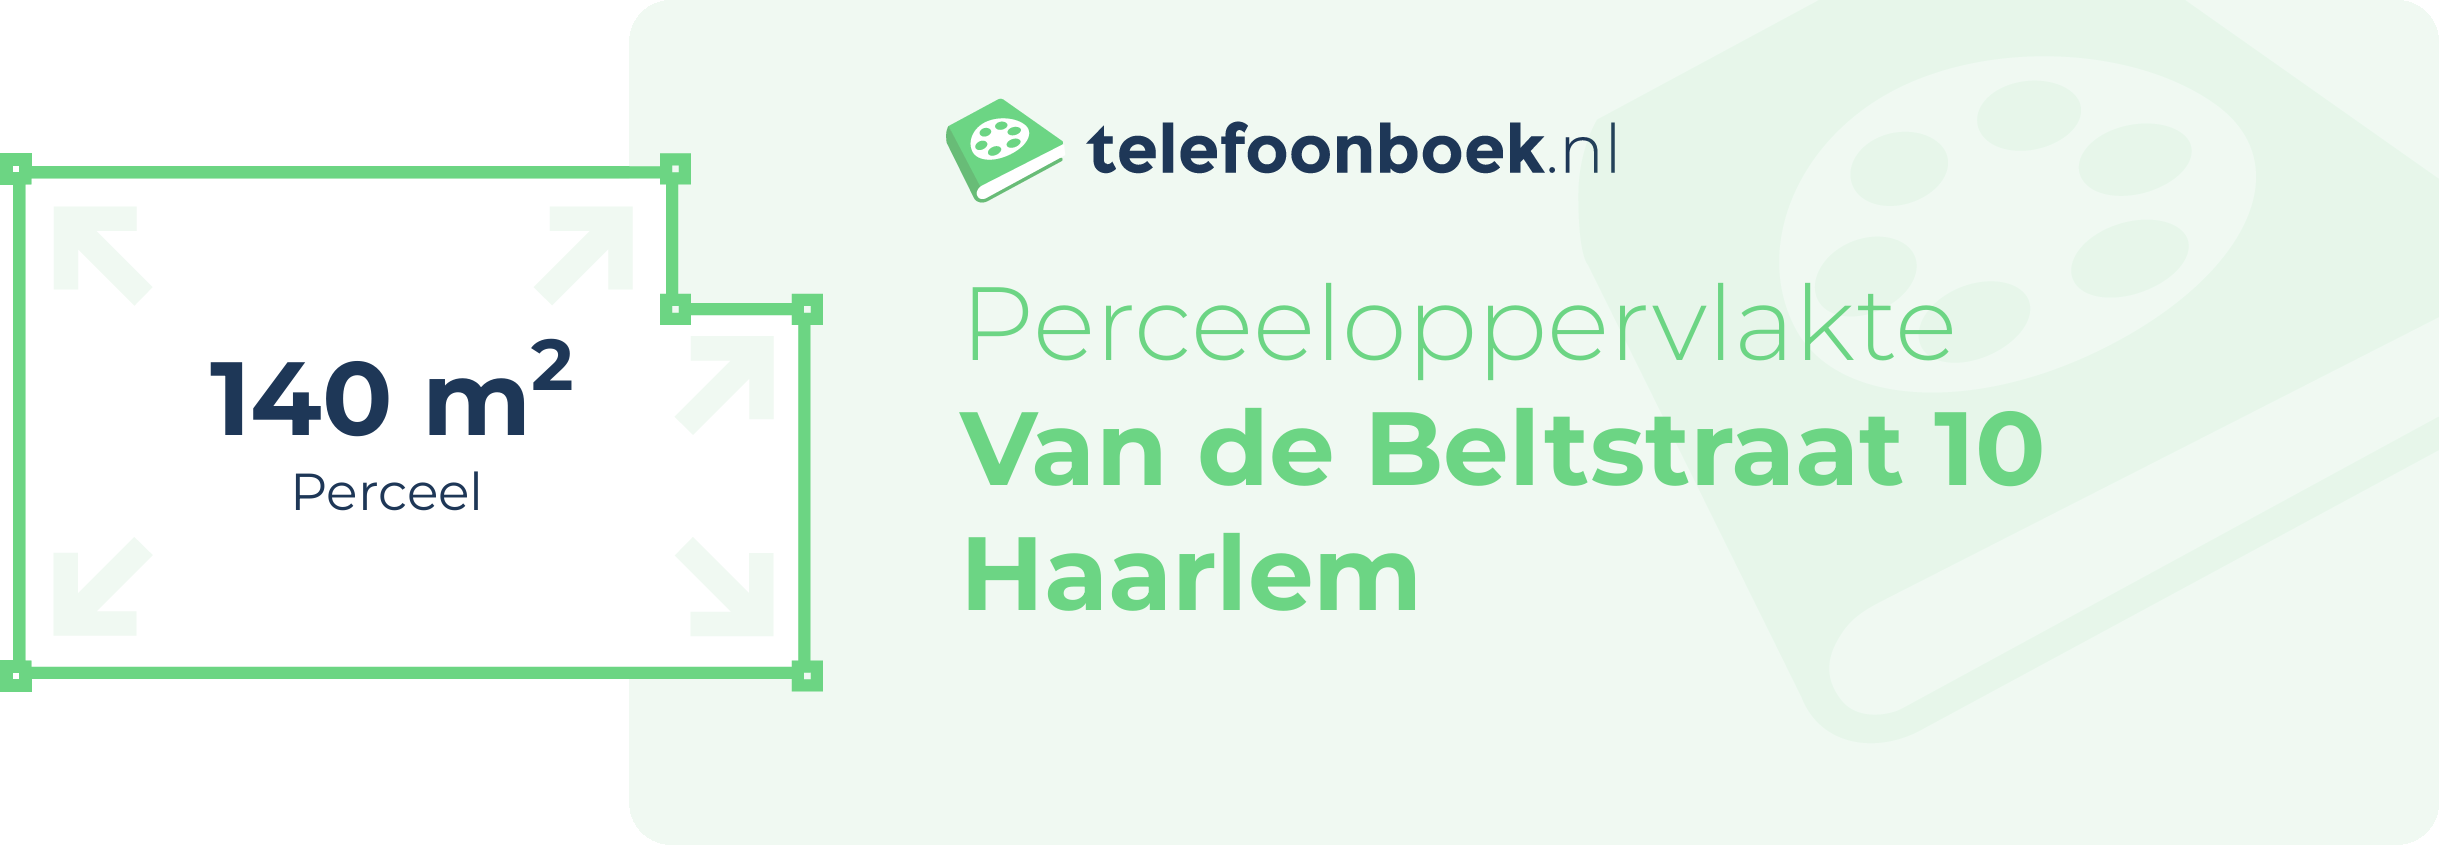 Perceeloppervlakte Van De Beltstraat 10 Haarlem